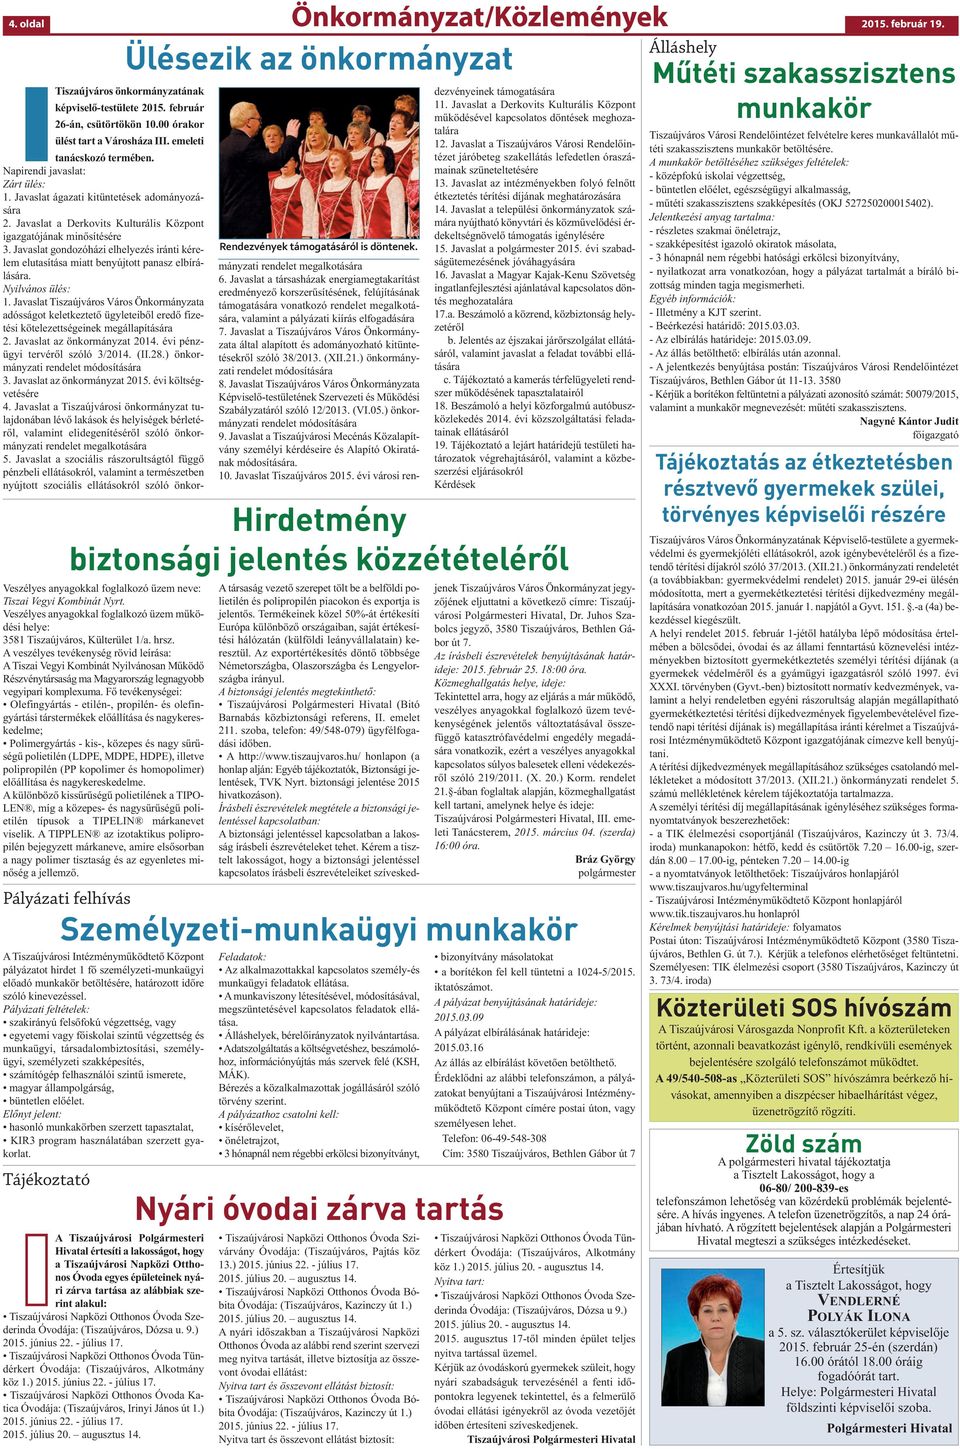 A veszélyes tevékenység rövid leírása: A Tiszai Vegyi Kombinát Nyilvánosan Működő Részvénytársaság ma Magyarország legnagyobb vegyipari komplexuma.